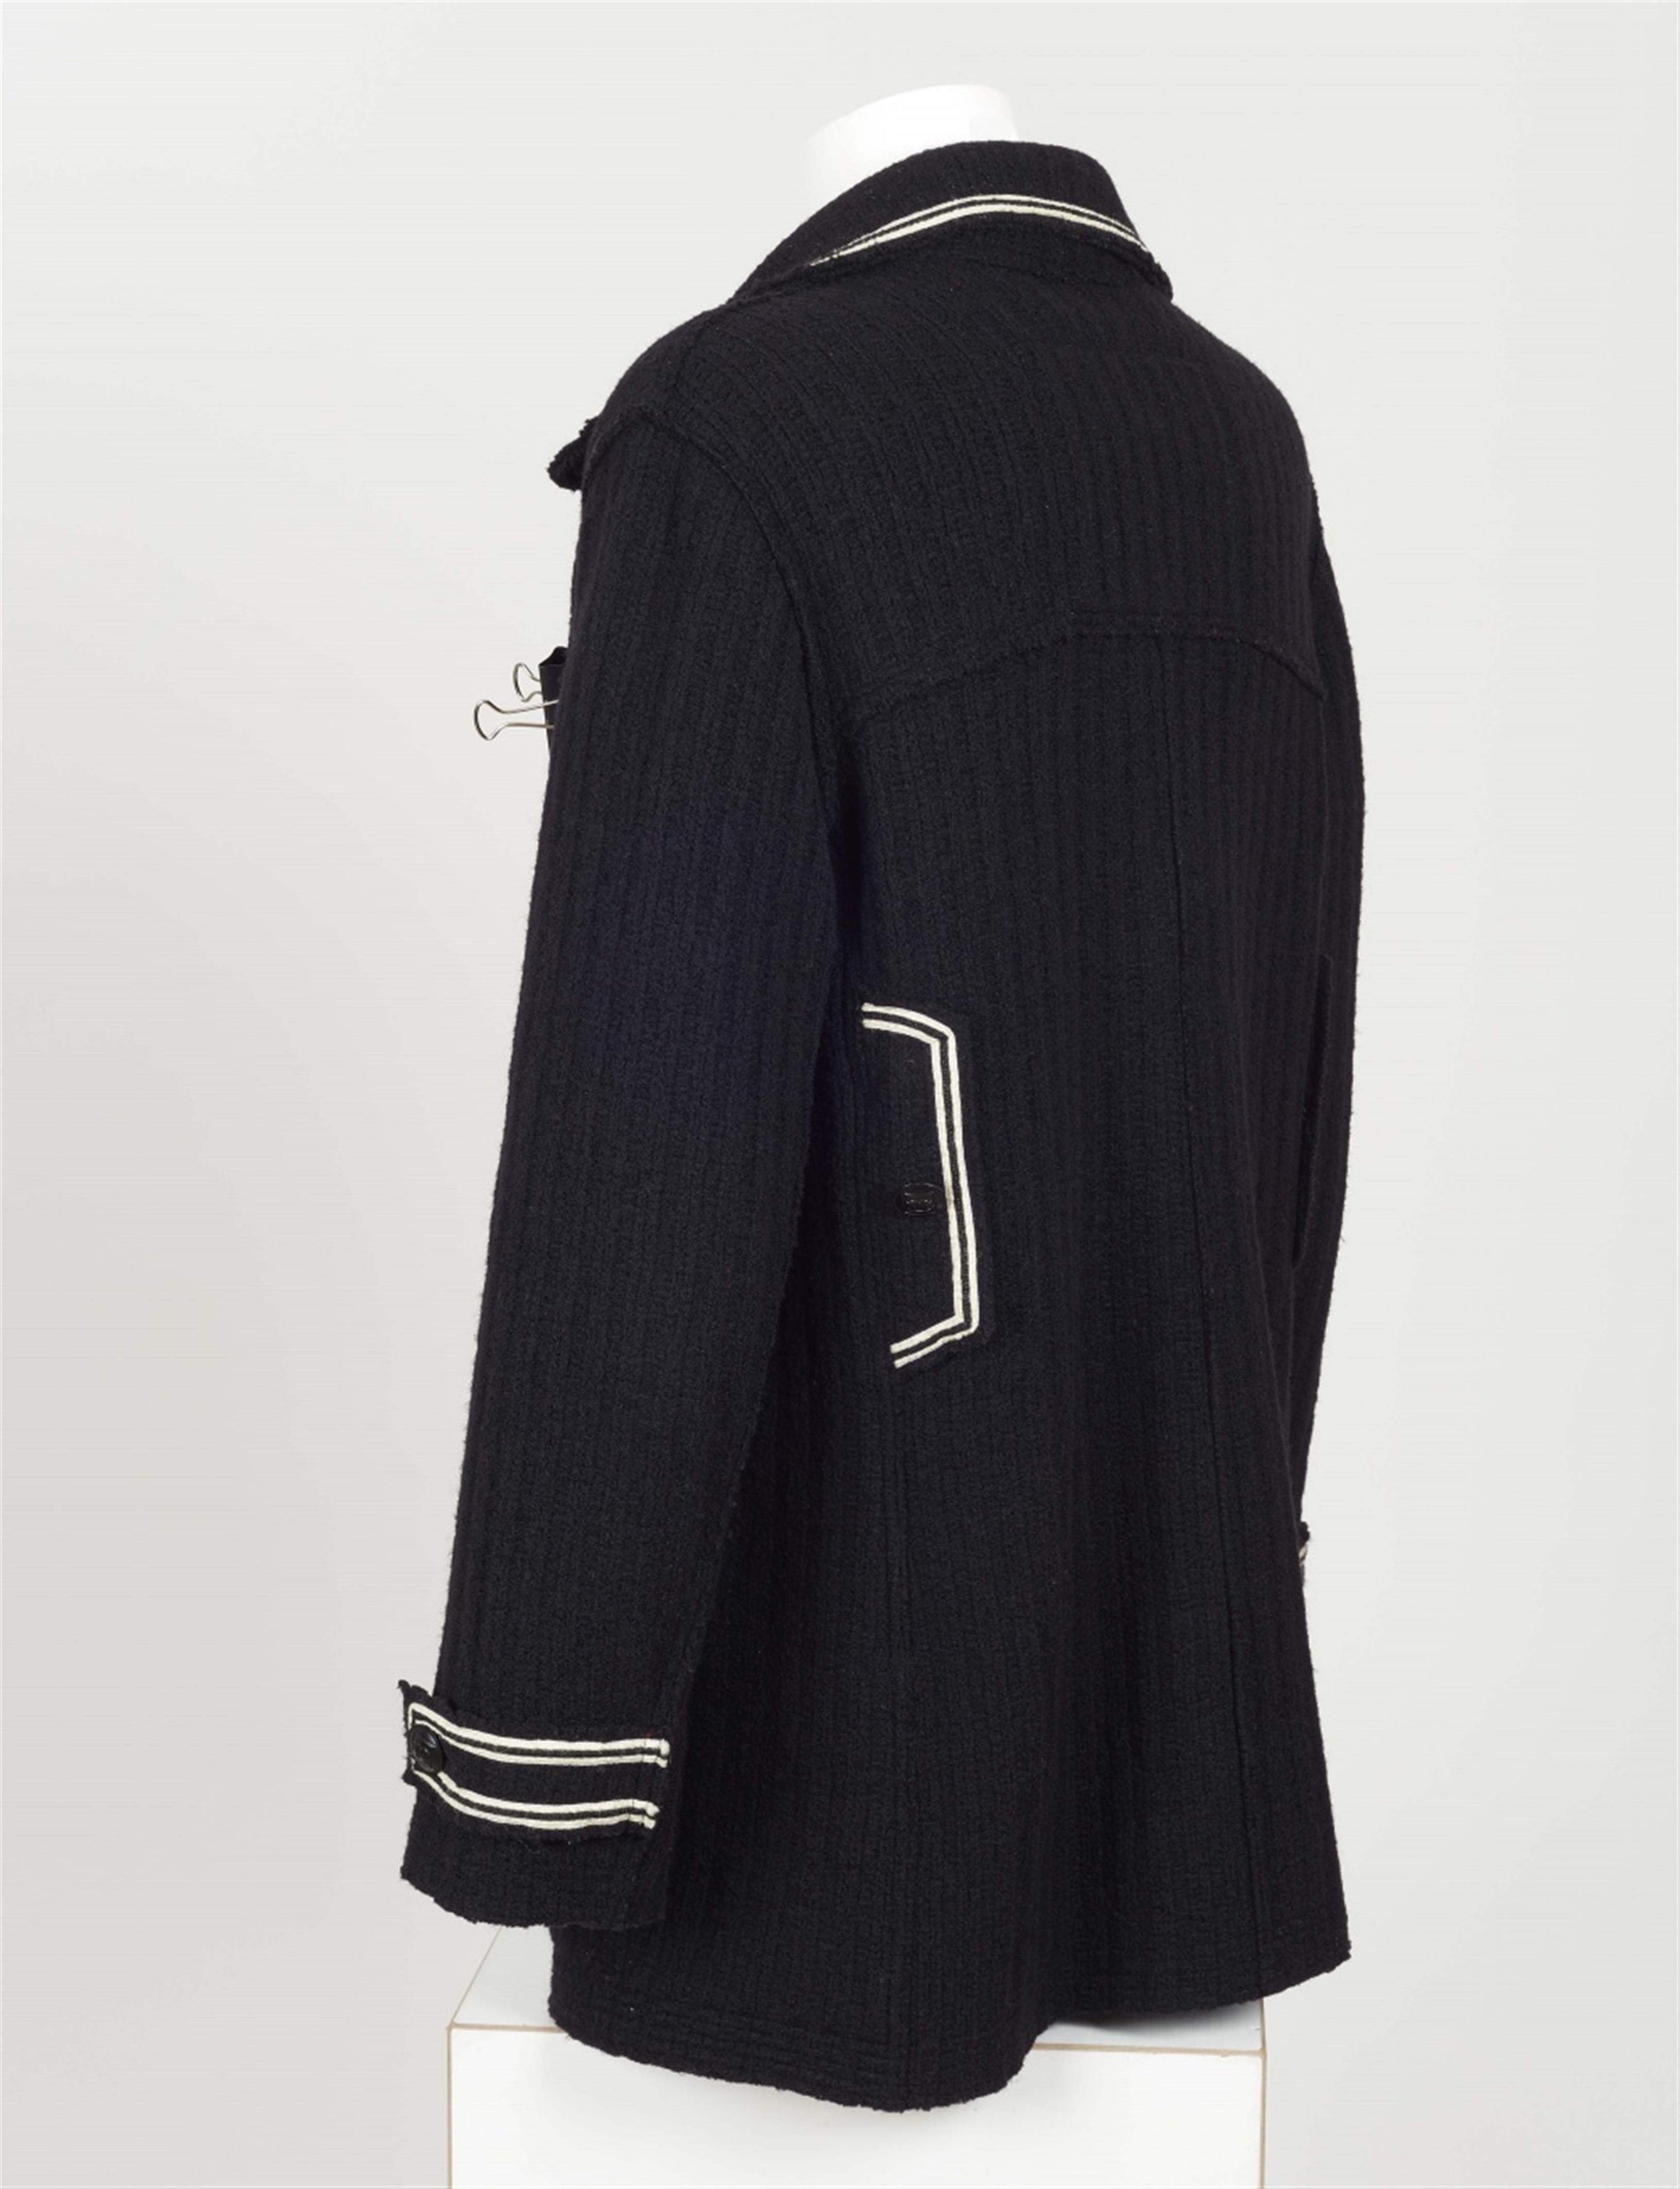 A Chanel men's pea coat, Autumn 2007 - image-3